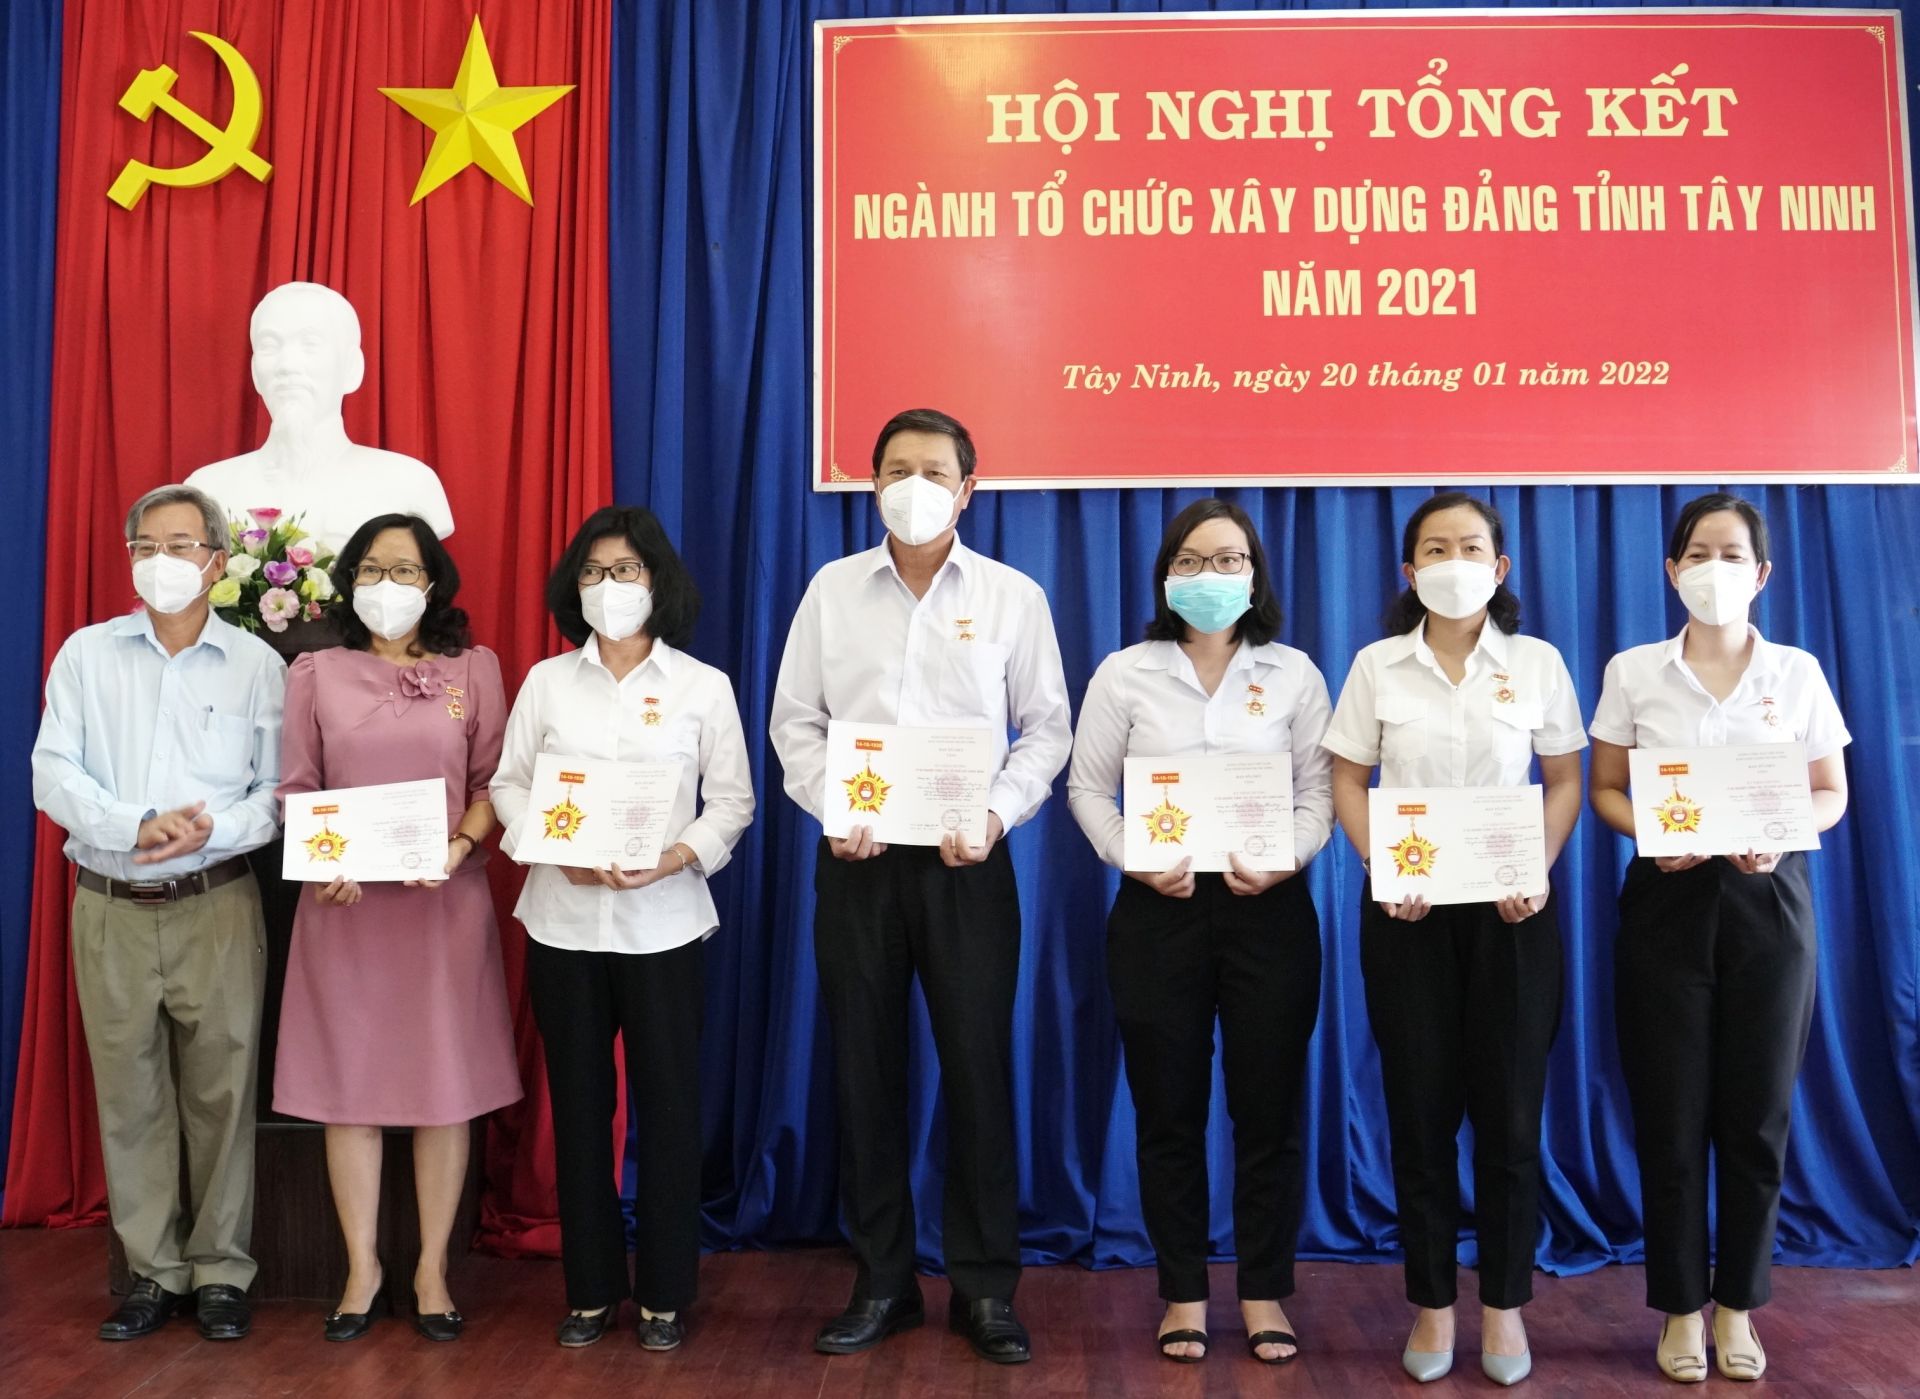 Điểm báo in Tây Ninh ngày 21.01.2022